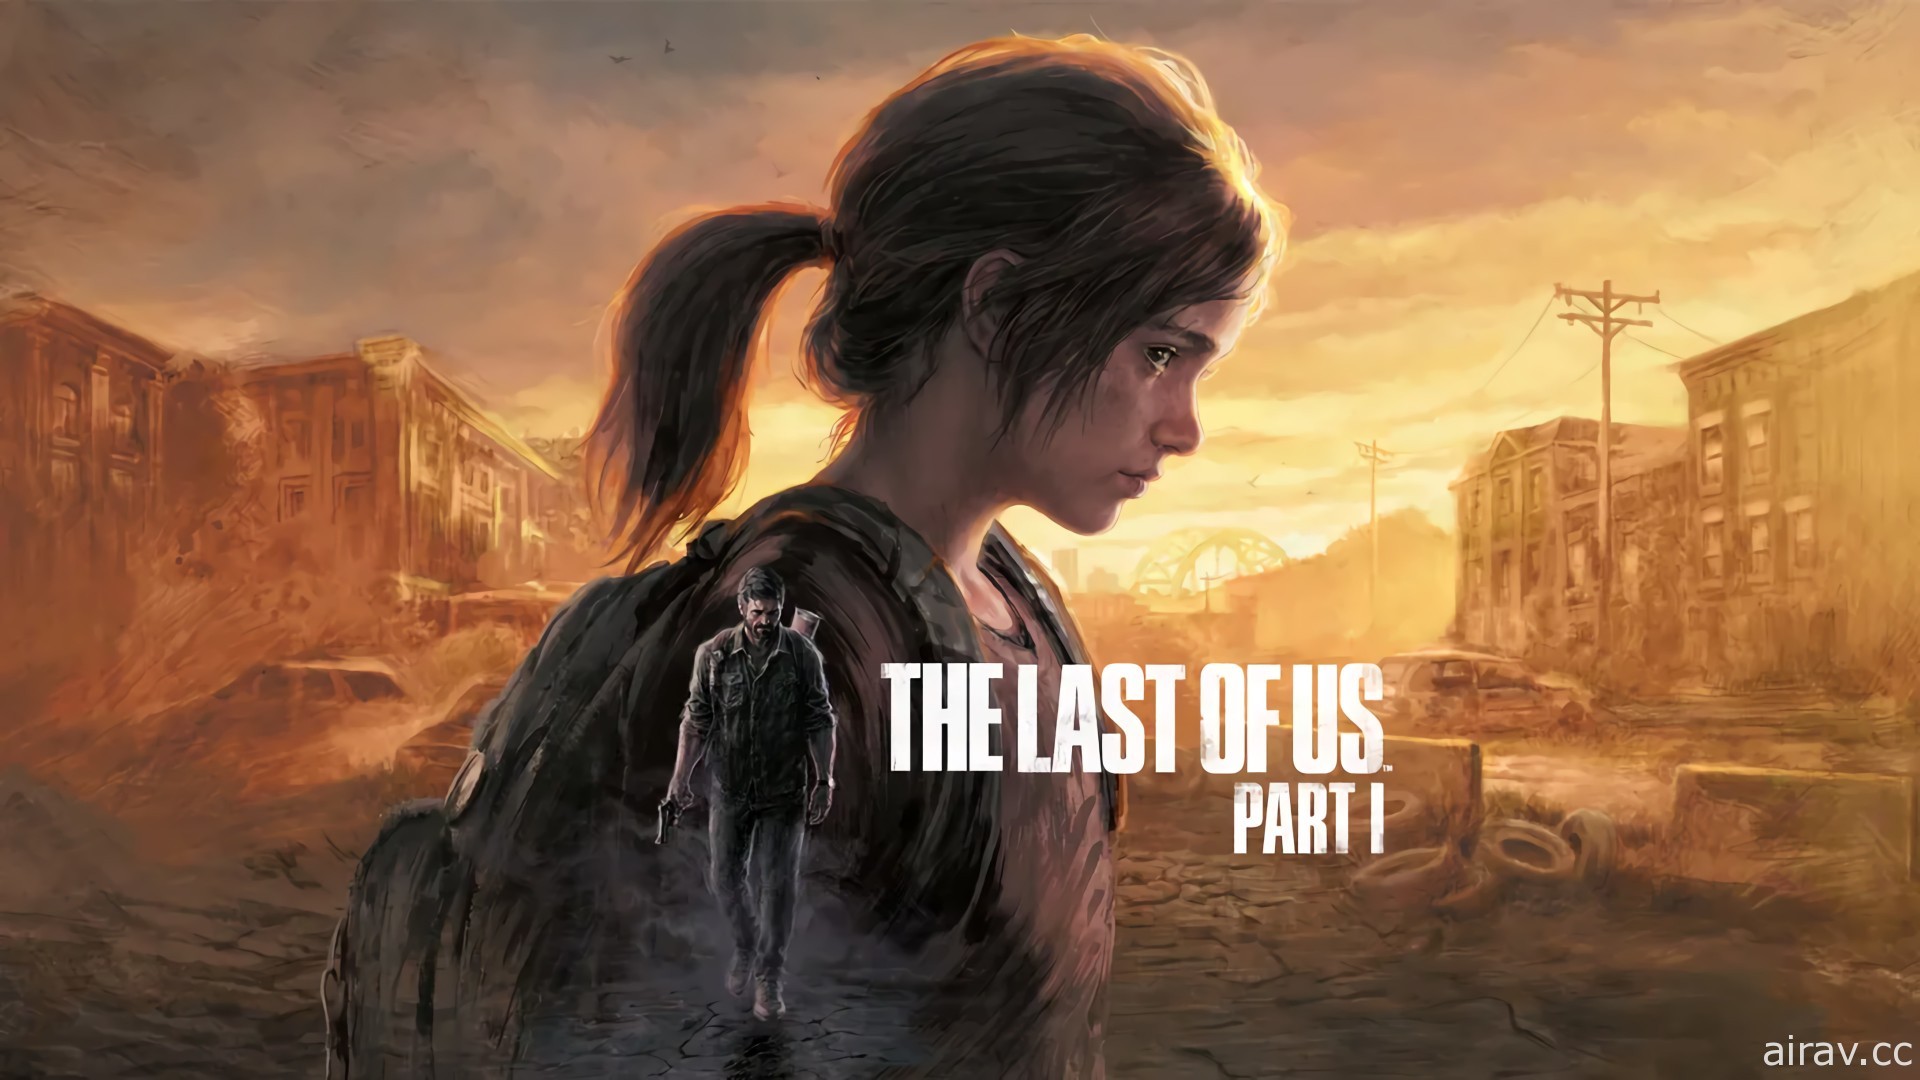 《最后生还者》首部曲重制版 9 月登陆 PS5 平台 画面、操控与系统全面翻新